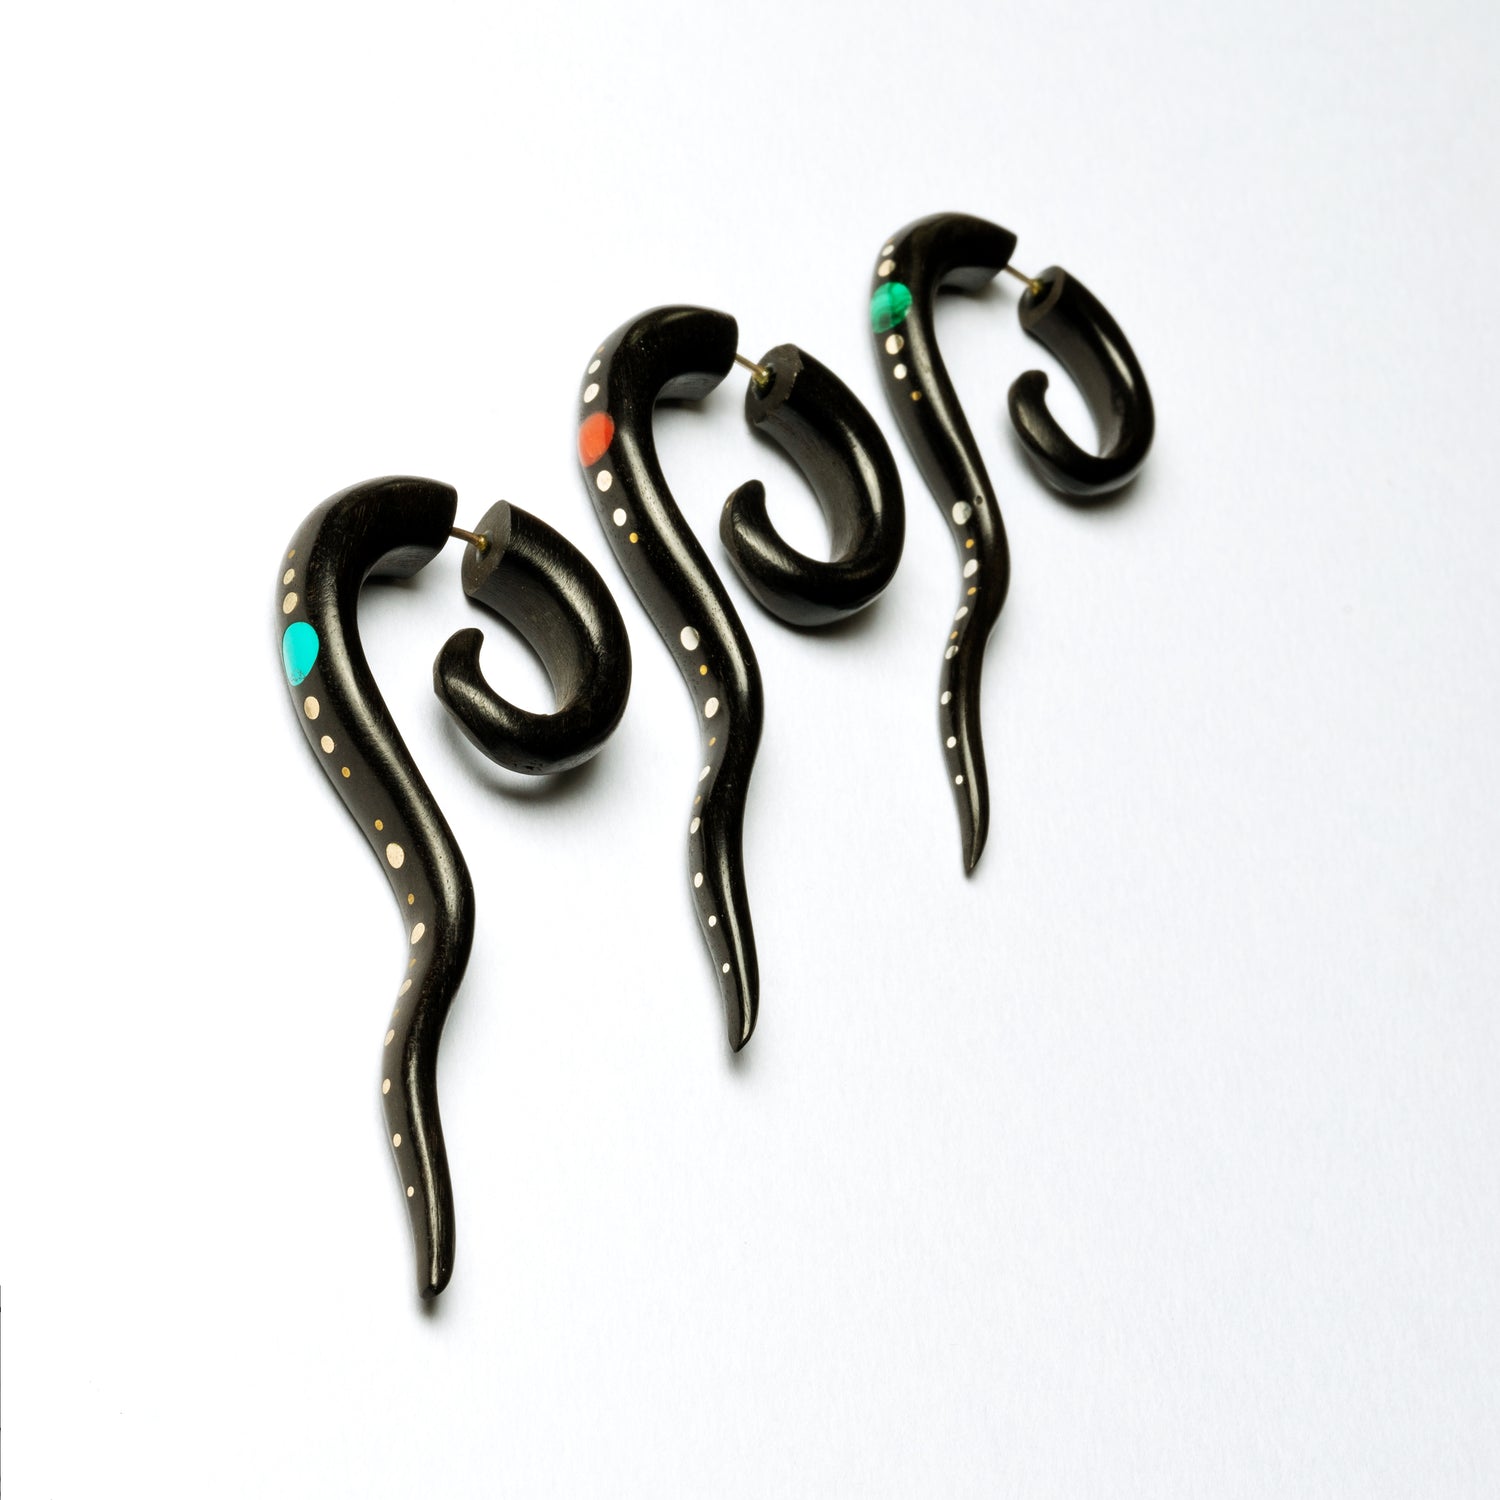 Wailuku black wood Fake Gauge Earring with stone and silver inlays -  Faux Gauge Earrings - Fake Ear Gauges - Fake Ear Stretcher - Fake Piercing - Gauge Jewellery - Faux Piercing - Faux Ear Stretcher - Tribal Piercing - Indian Piercing - Fake Expanders - Split Ear Stretcher - Tribal Expander - Fake Stretchers- Organic Jewellery - Tribal Earrings - Indian Earrings - Tribal Jewellery - Indian Jewellery - Spiral Jewellery - Ethnic Jewellery - Spiral Fake Gauge - Festival Fashion - Festival Jewellery